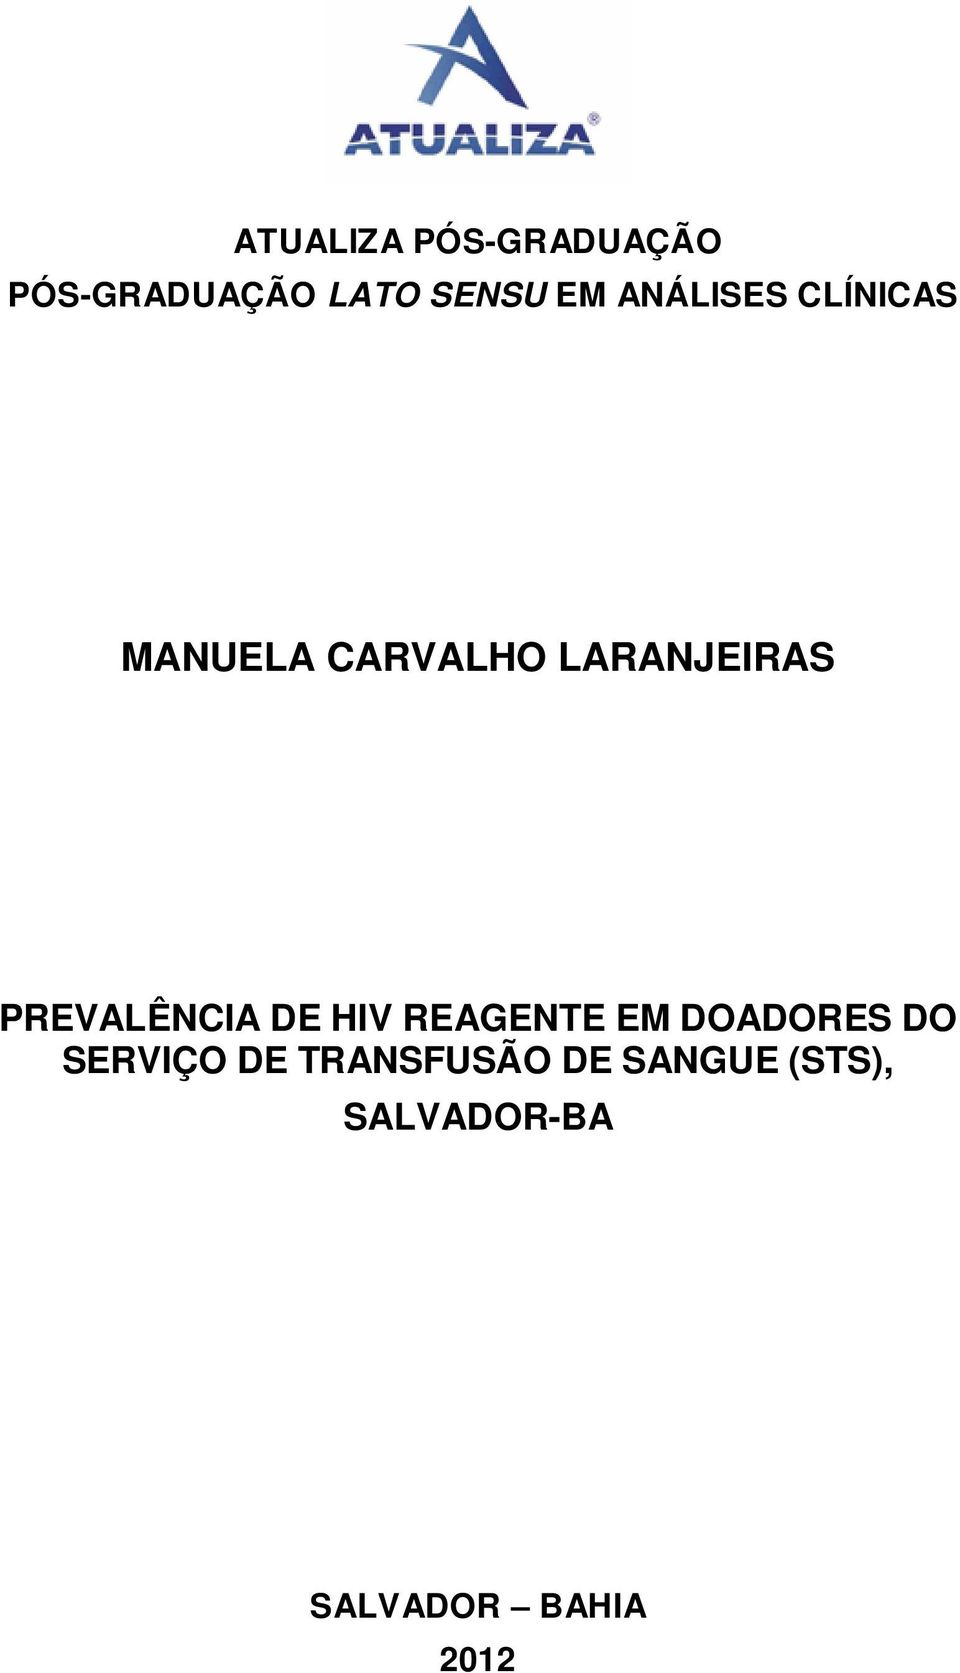 PREVALÊNCIA DE HIV REAGENTE EM DOADORES DO SERVIÇO